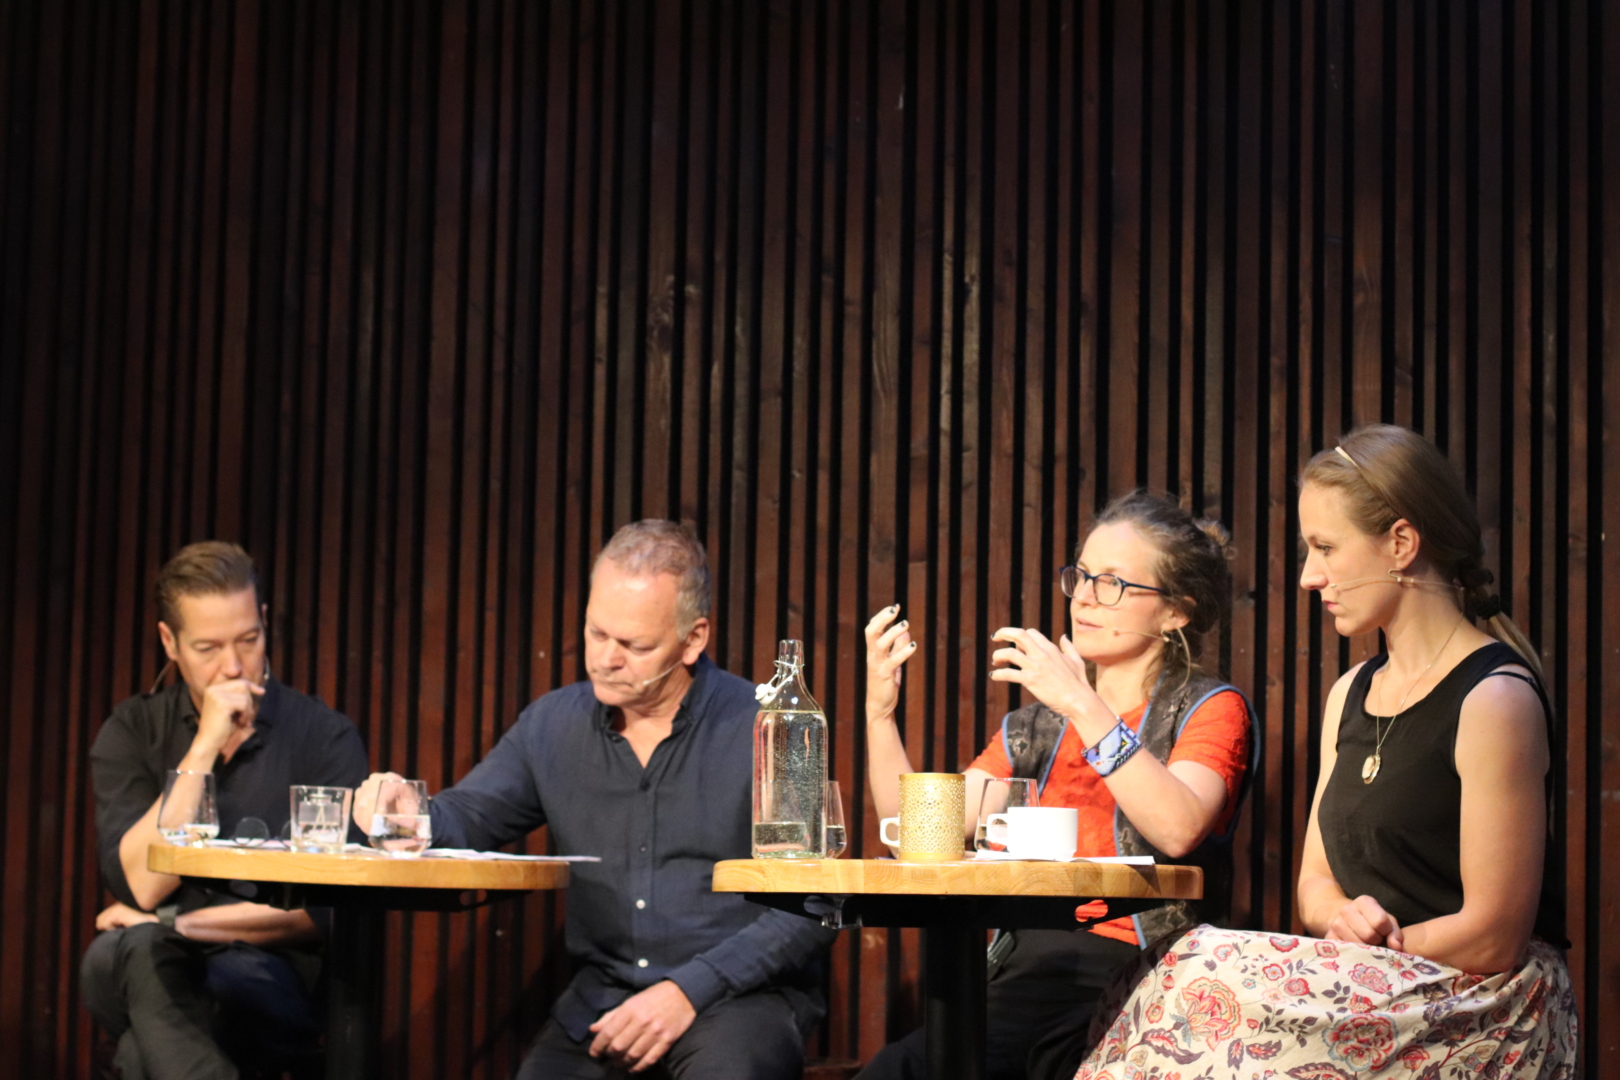 Debattantene: Panelet bestod av Lars Petter Hagen, Karl Seglem, Guro Skumsnes Moe og Hedvig Mollestad.